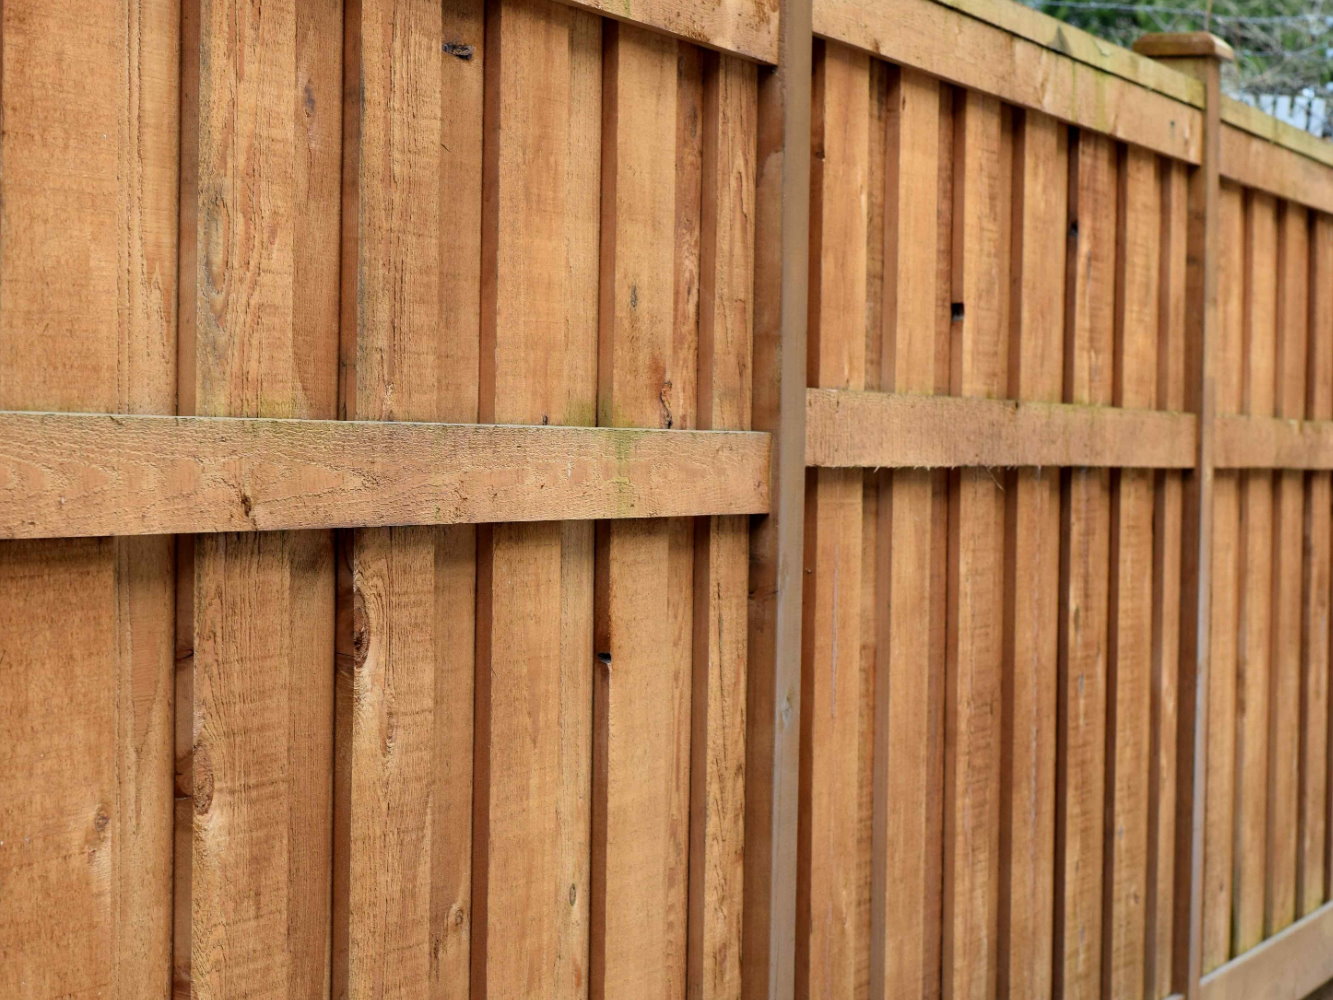 Masonville KY Shadowbox style wood fence